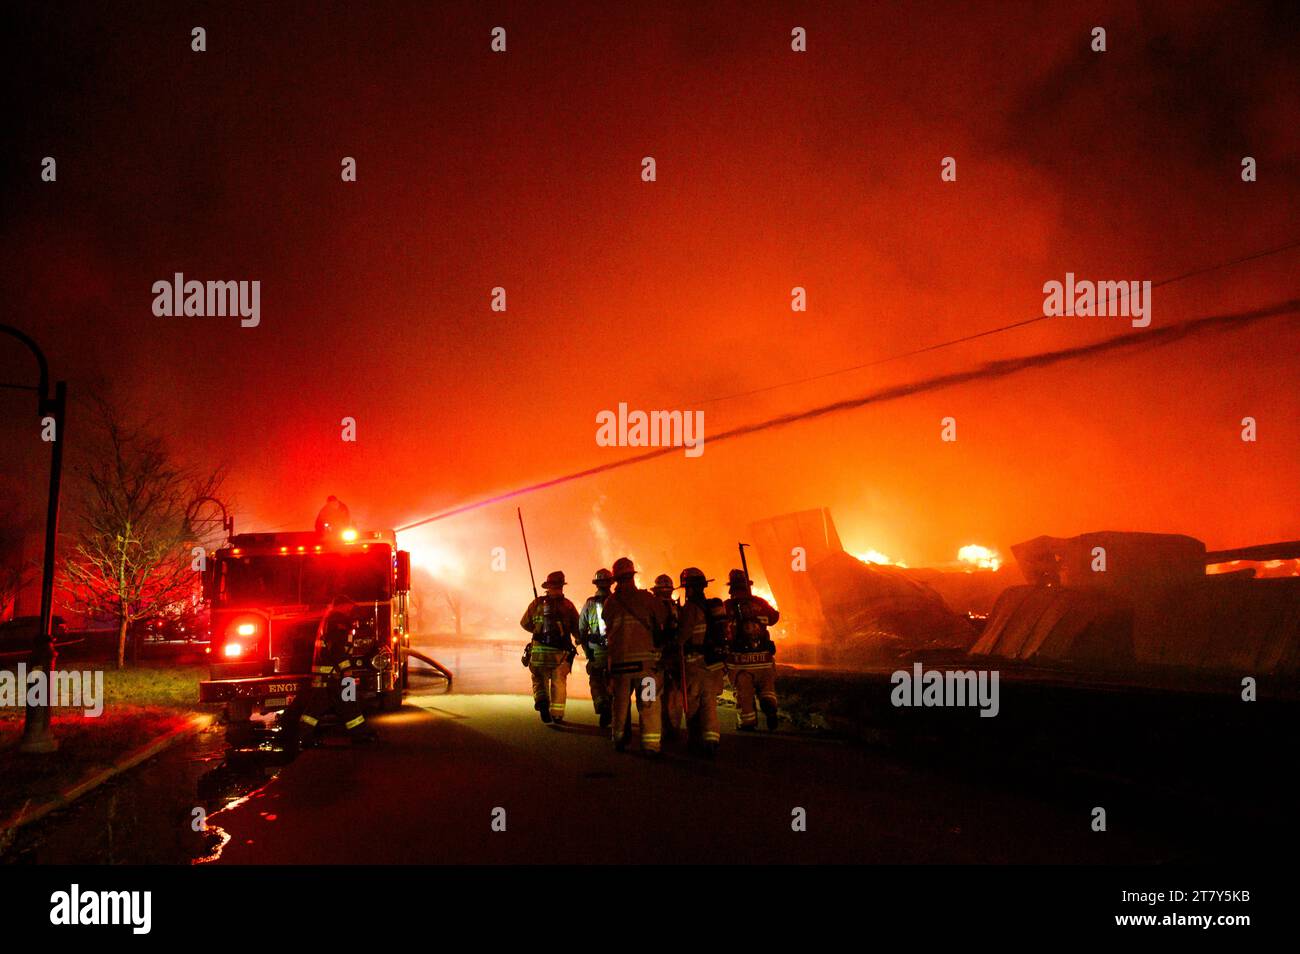 Feuerwehrmänner im Kampf gegen eine spektakuläre Flamme auf dem RK Miles Holzlager in Montpelier, VT, New England, USA. Stockfoto